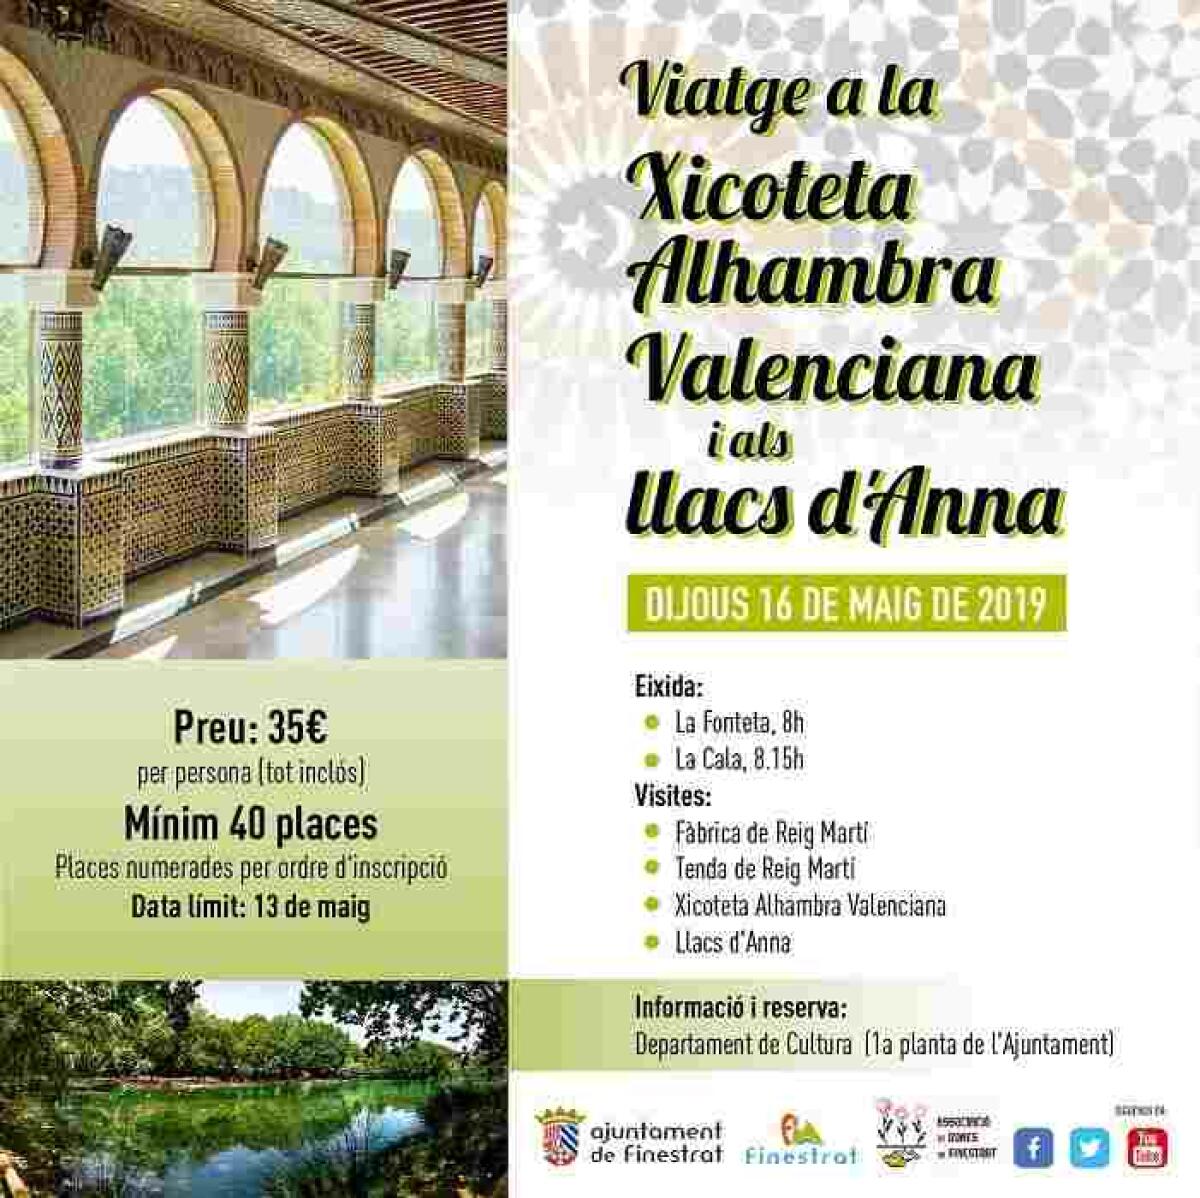 Finestrat organiza una visita a la “Alhambra valenciana” y los Lagos de Anna